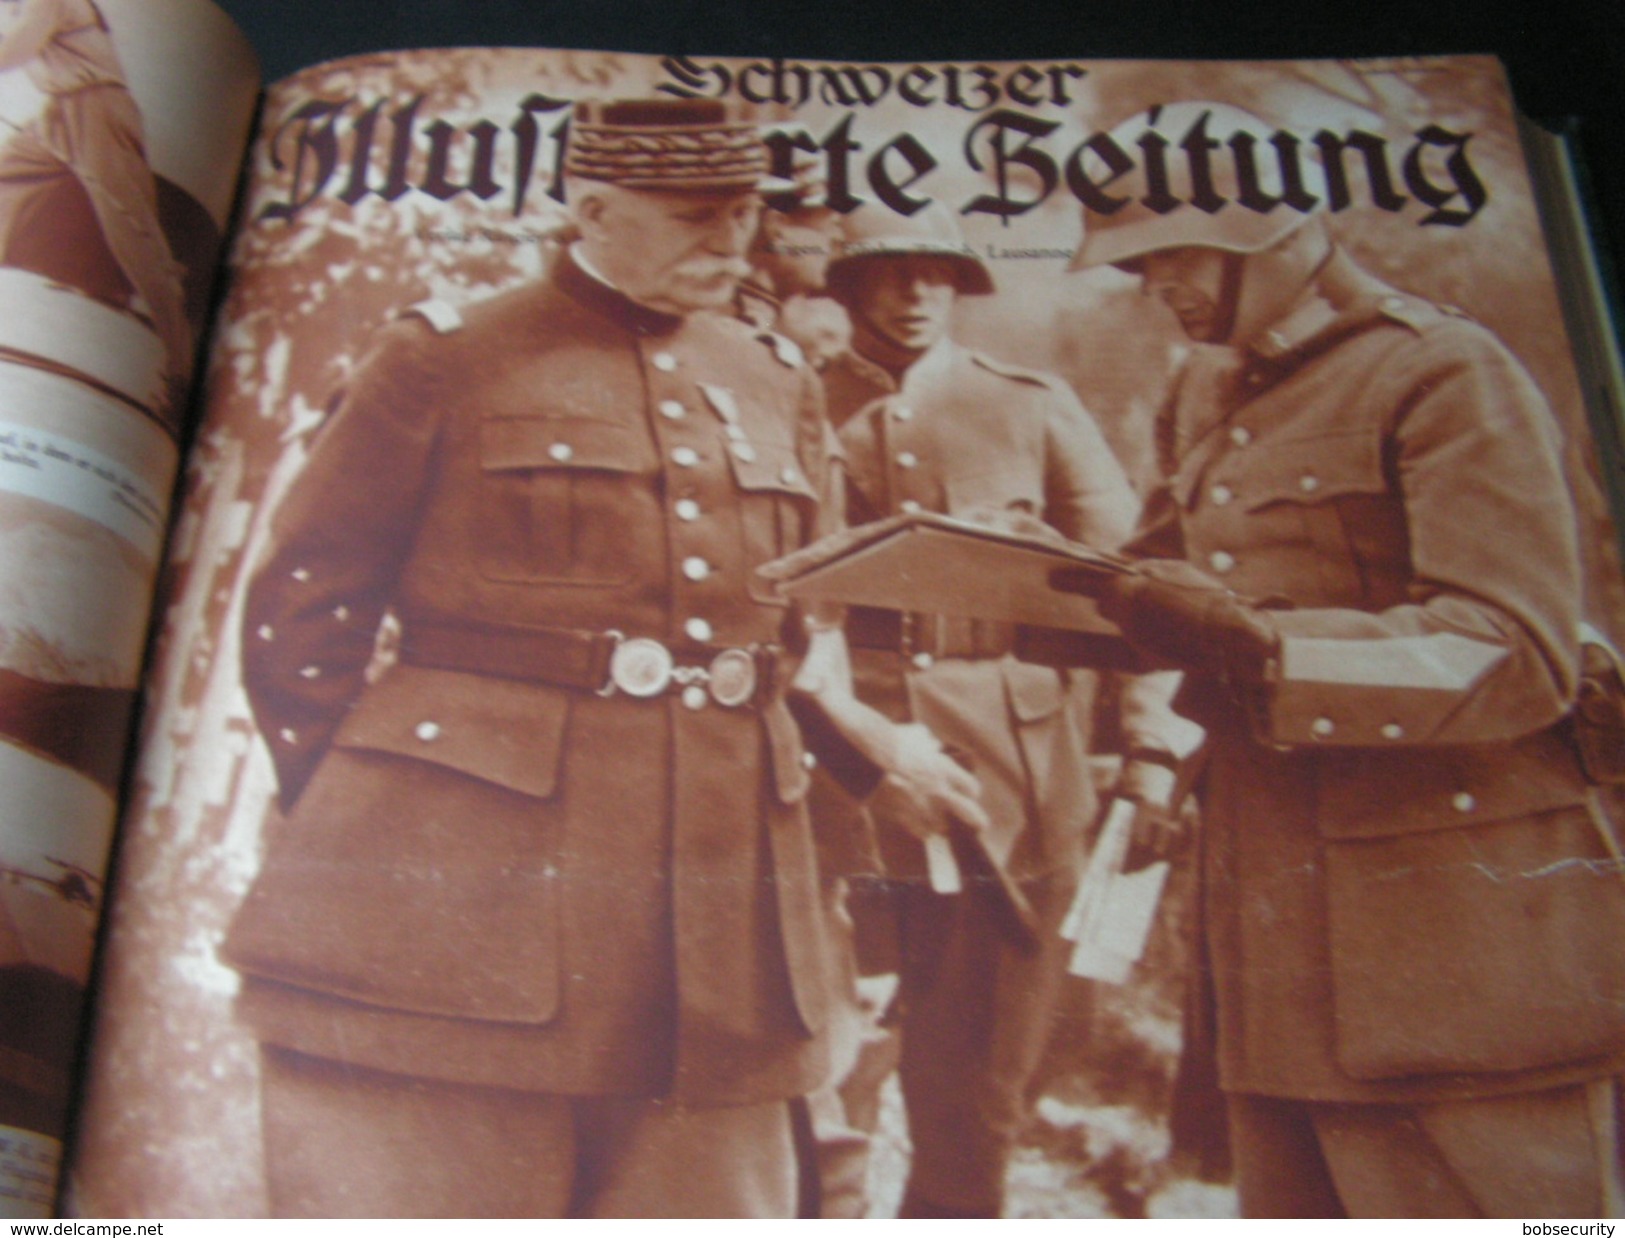 Schweizer Ilustrierte 1939 Teil I Januar bis Juni als Buch , Sport , Krieg , Reklame , Eregnise, Katastrophen